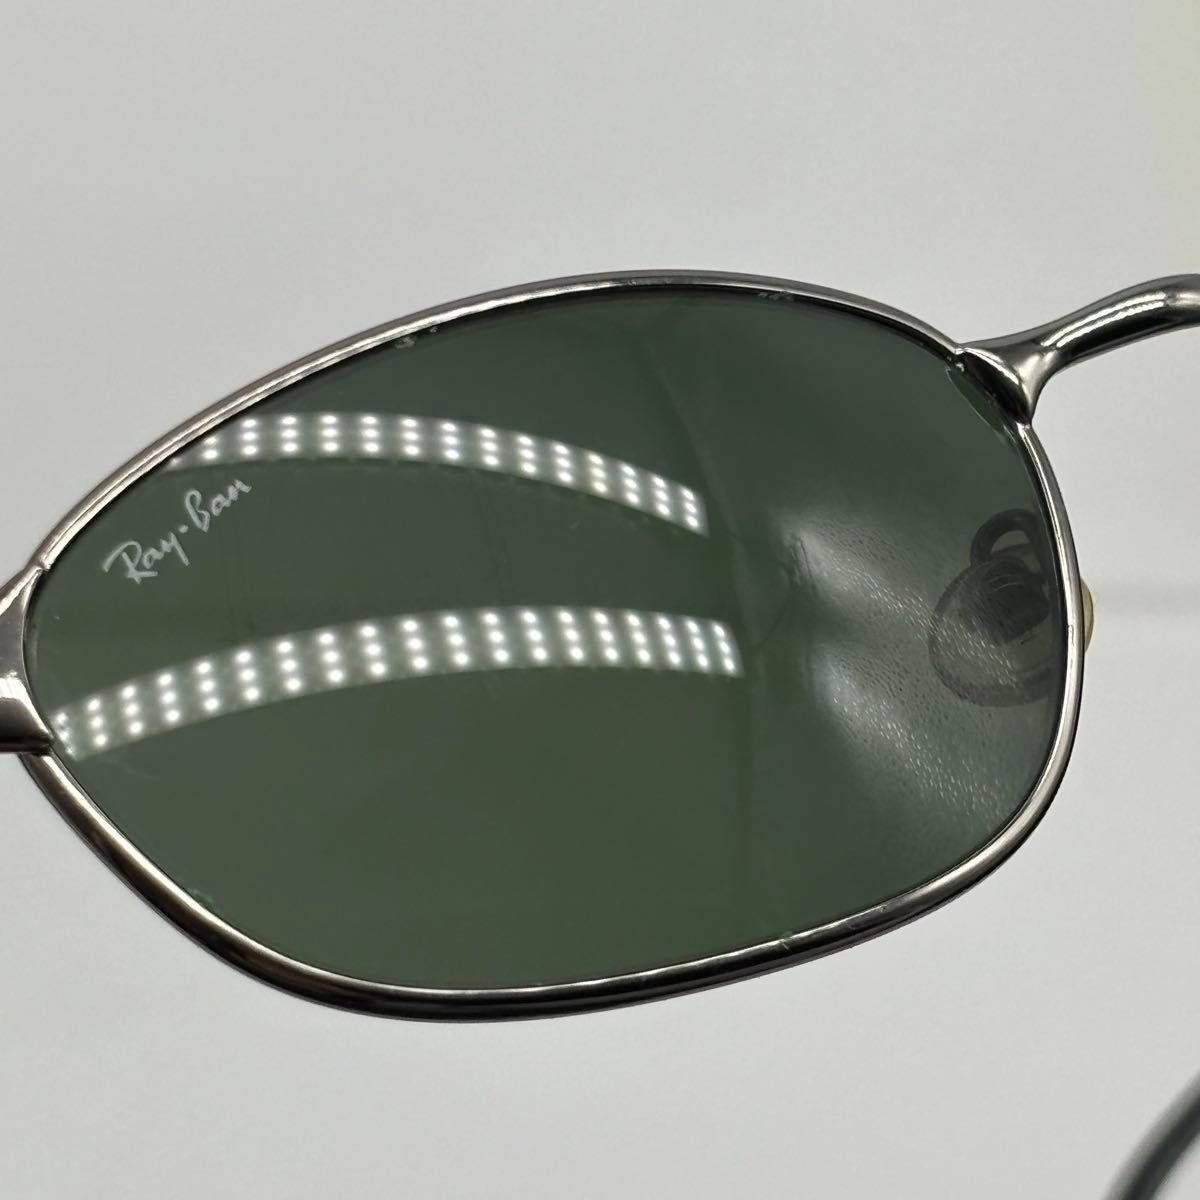 Ray-Ban レイバン RB 3023 W2962 サングラス メガネ 眼鏡 シルバー系 